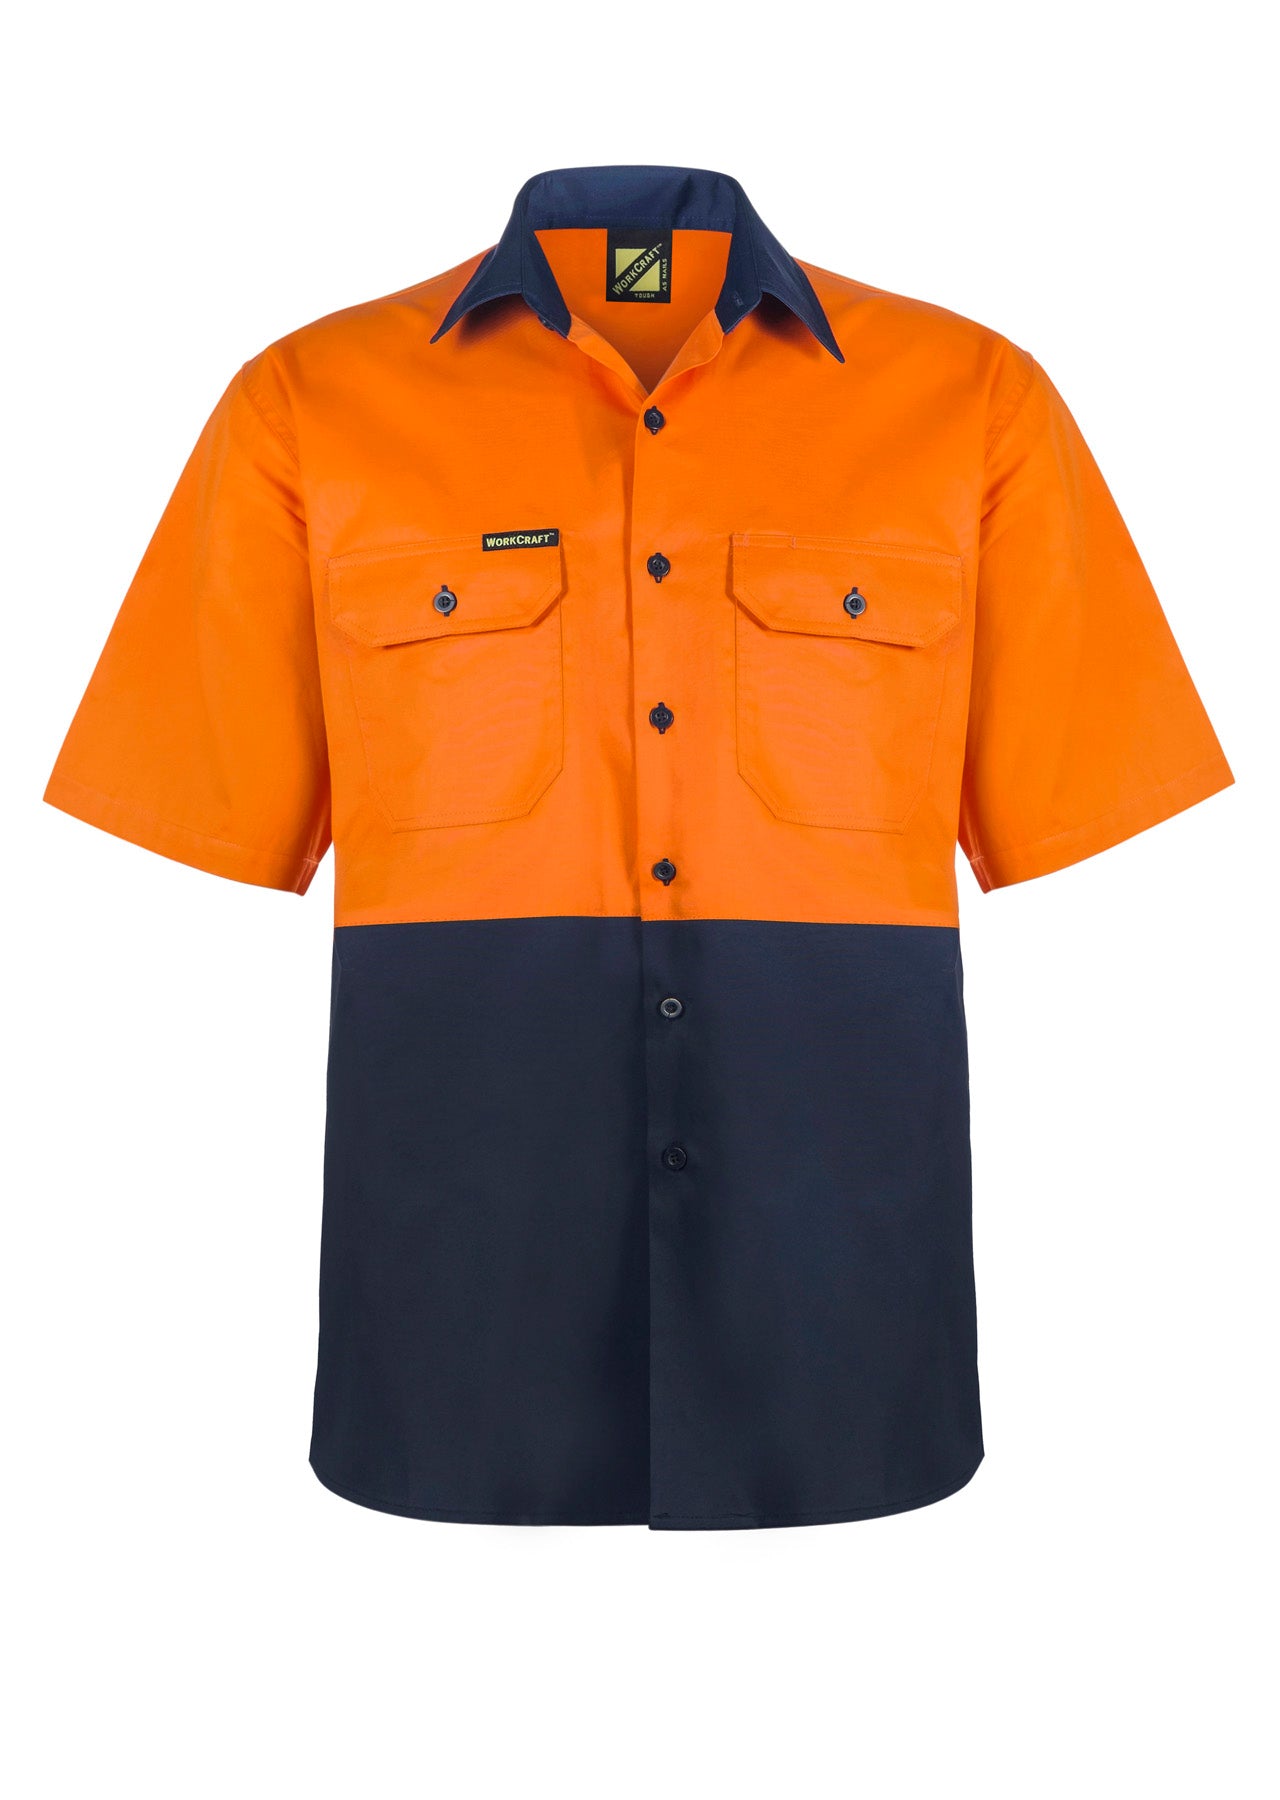 WS4248 custom vented tradie work shirt